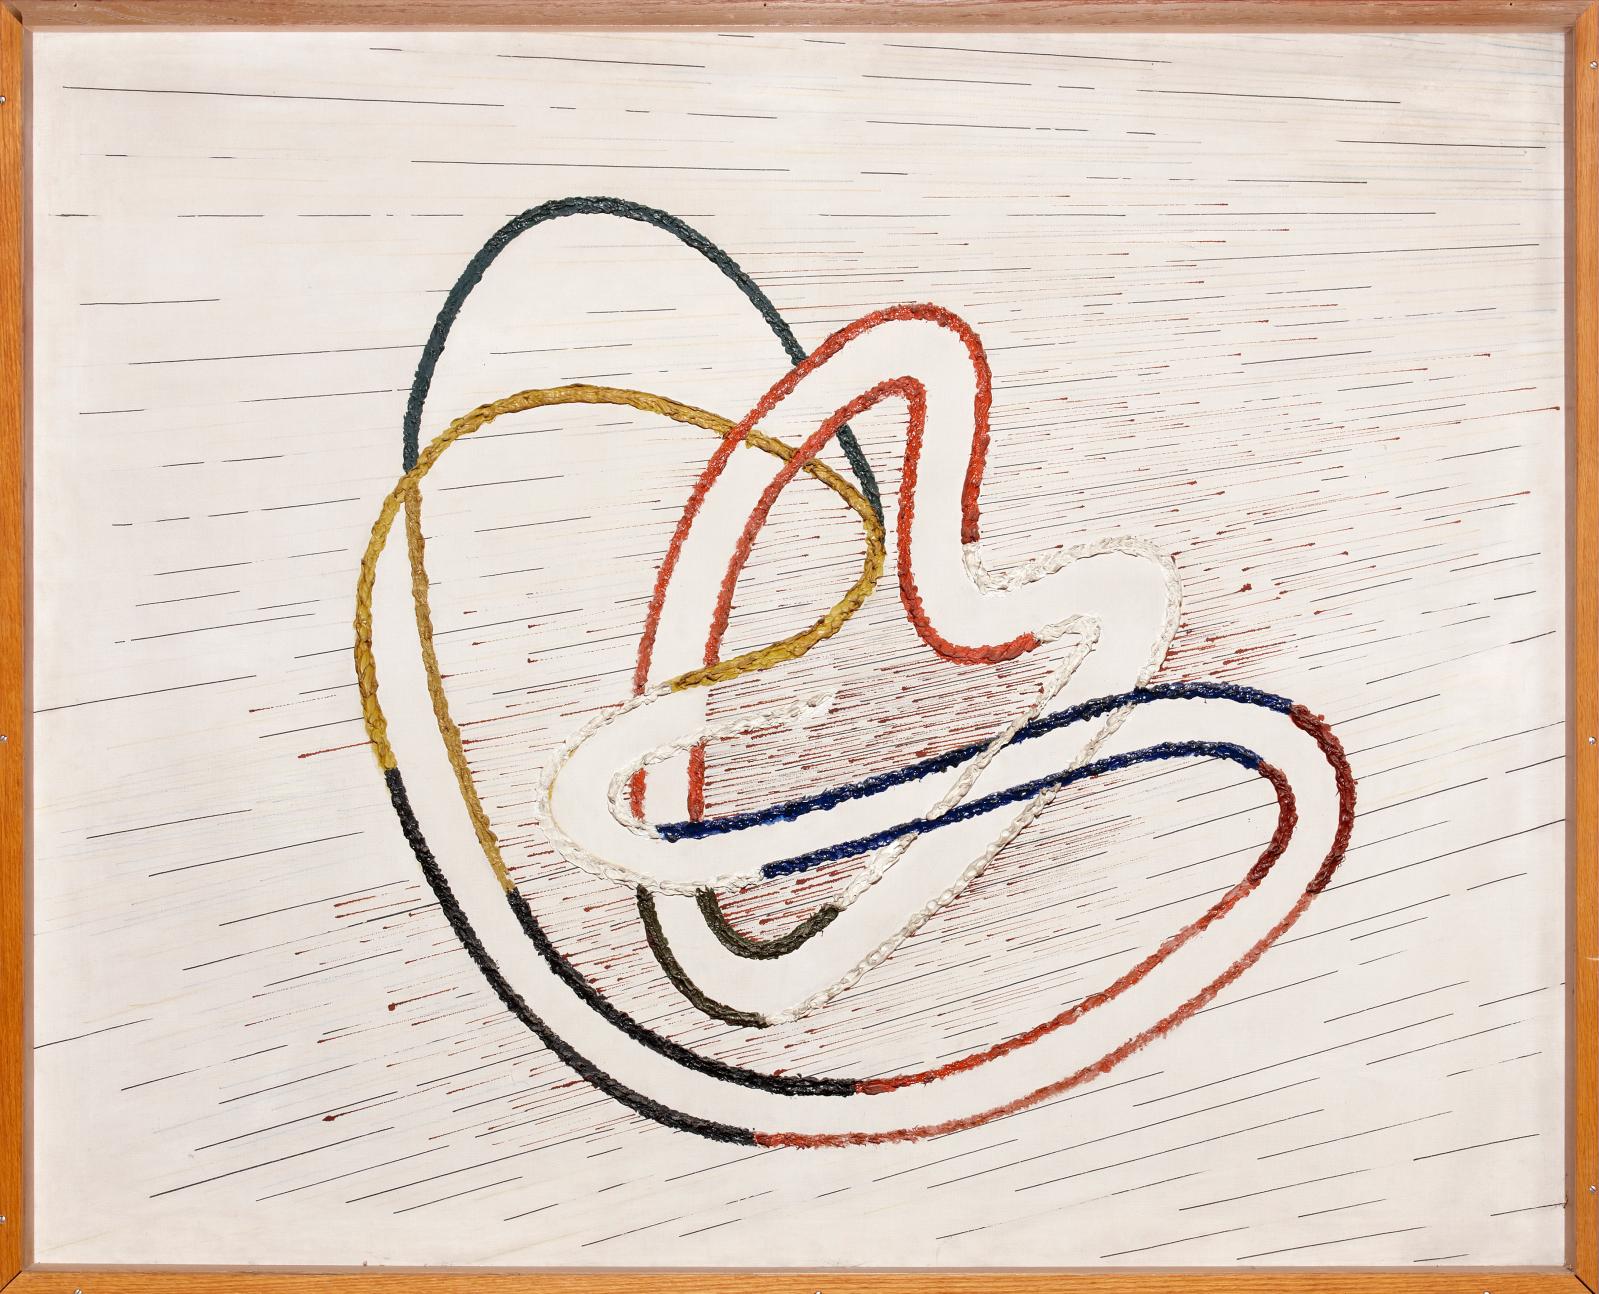 László Moholy-Nagy (1895-1946), CH 7, 1939, huile sur toile, 107 x 130 cm.